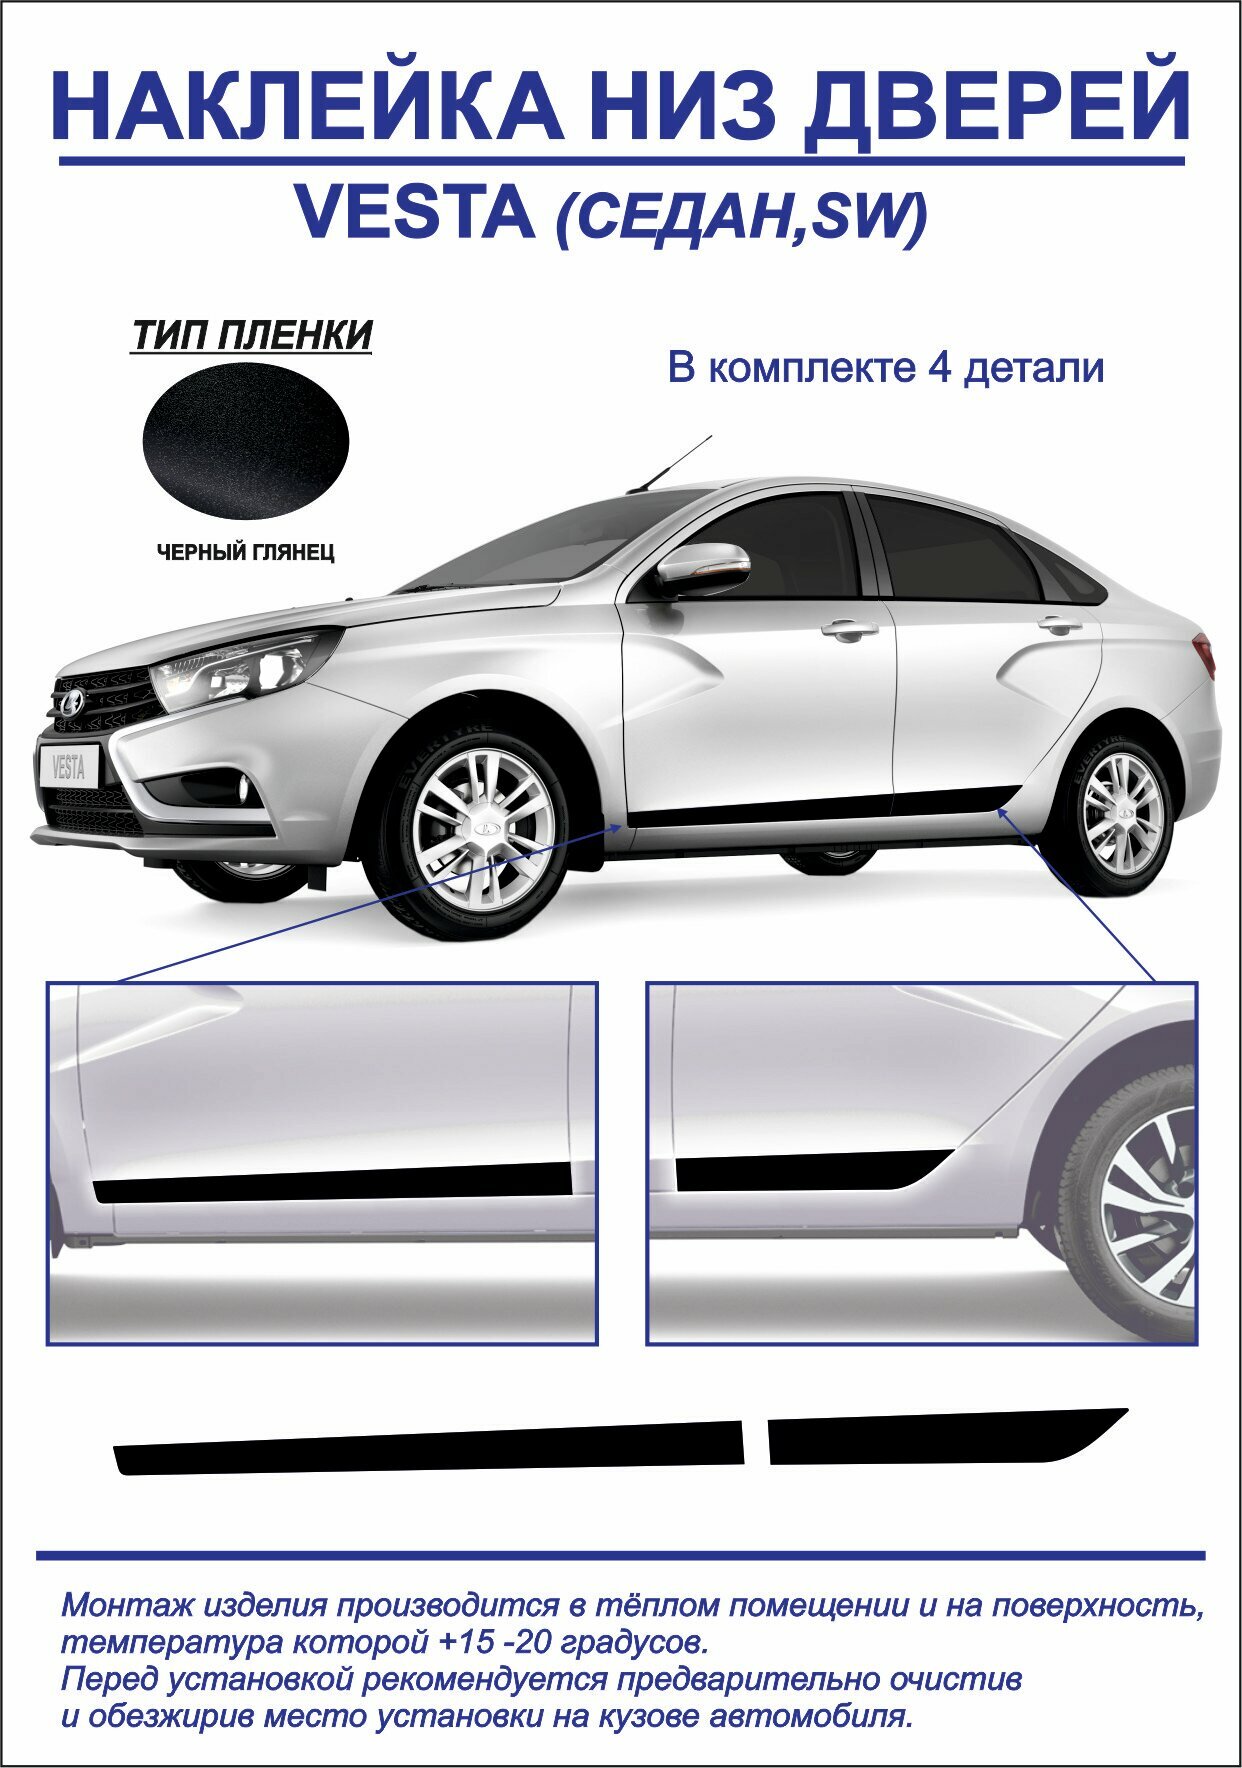 Наклейка, тюнинг, низ дверей Lada Vesta седан, sw (черный глянец) 4шт. на обе стороны